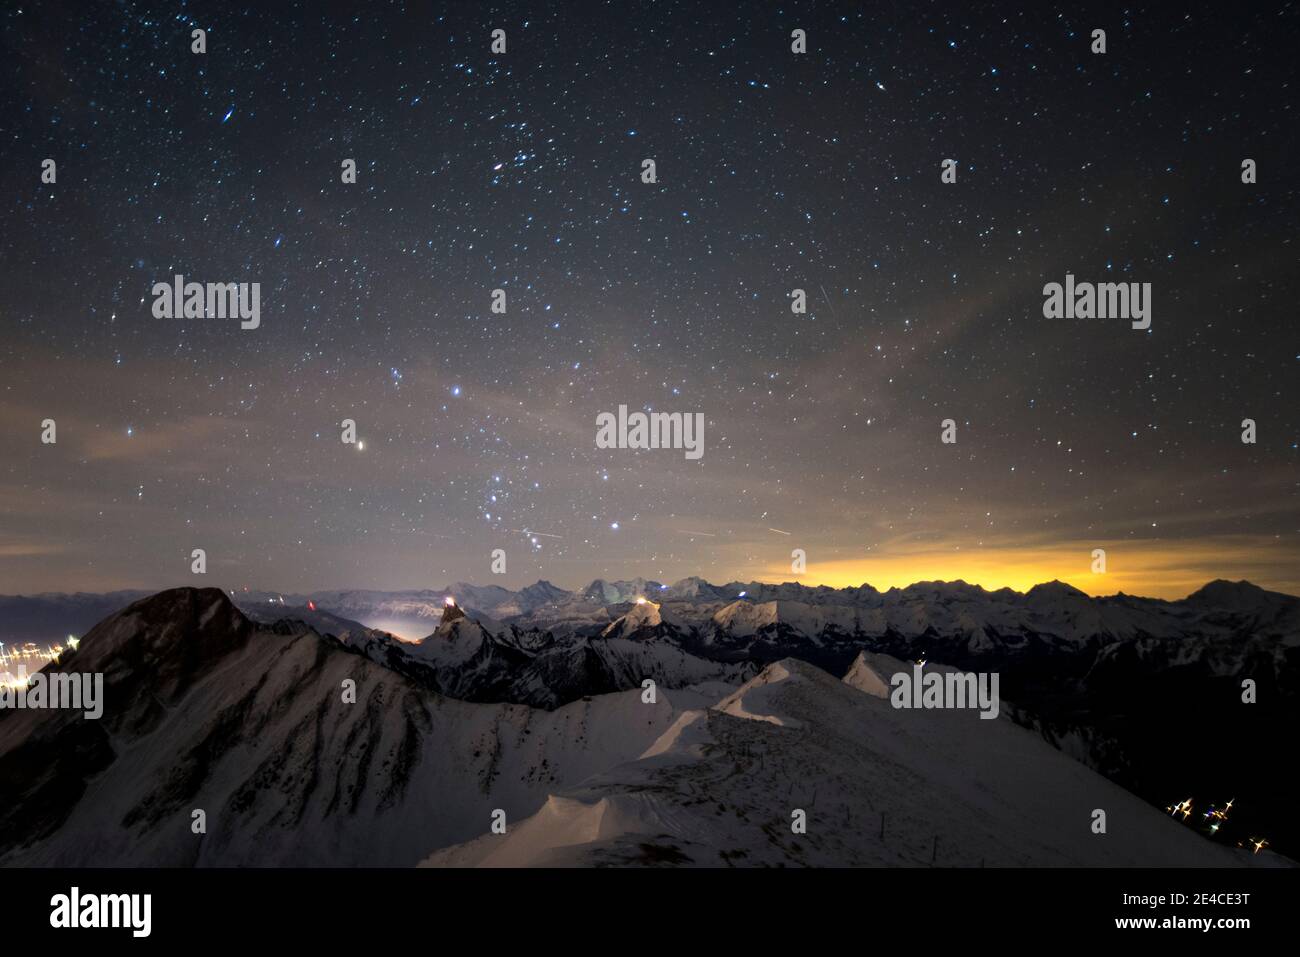 notte invernale limpida sulla cima di una montagna, luci nella valle Foto Stock